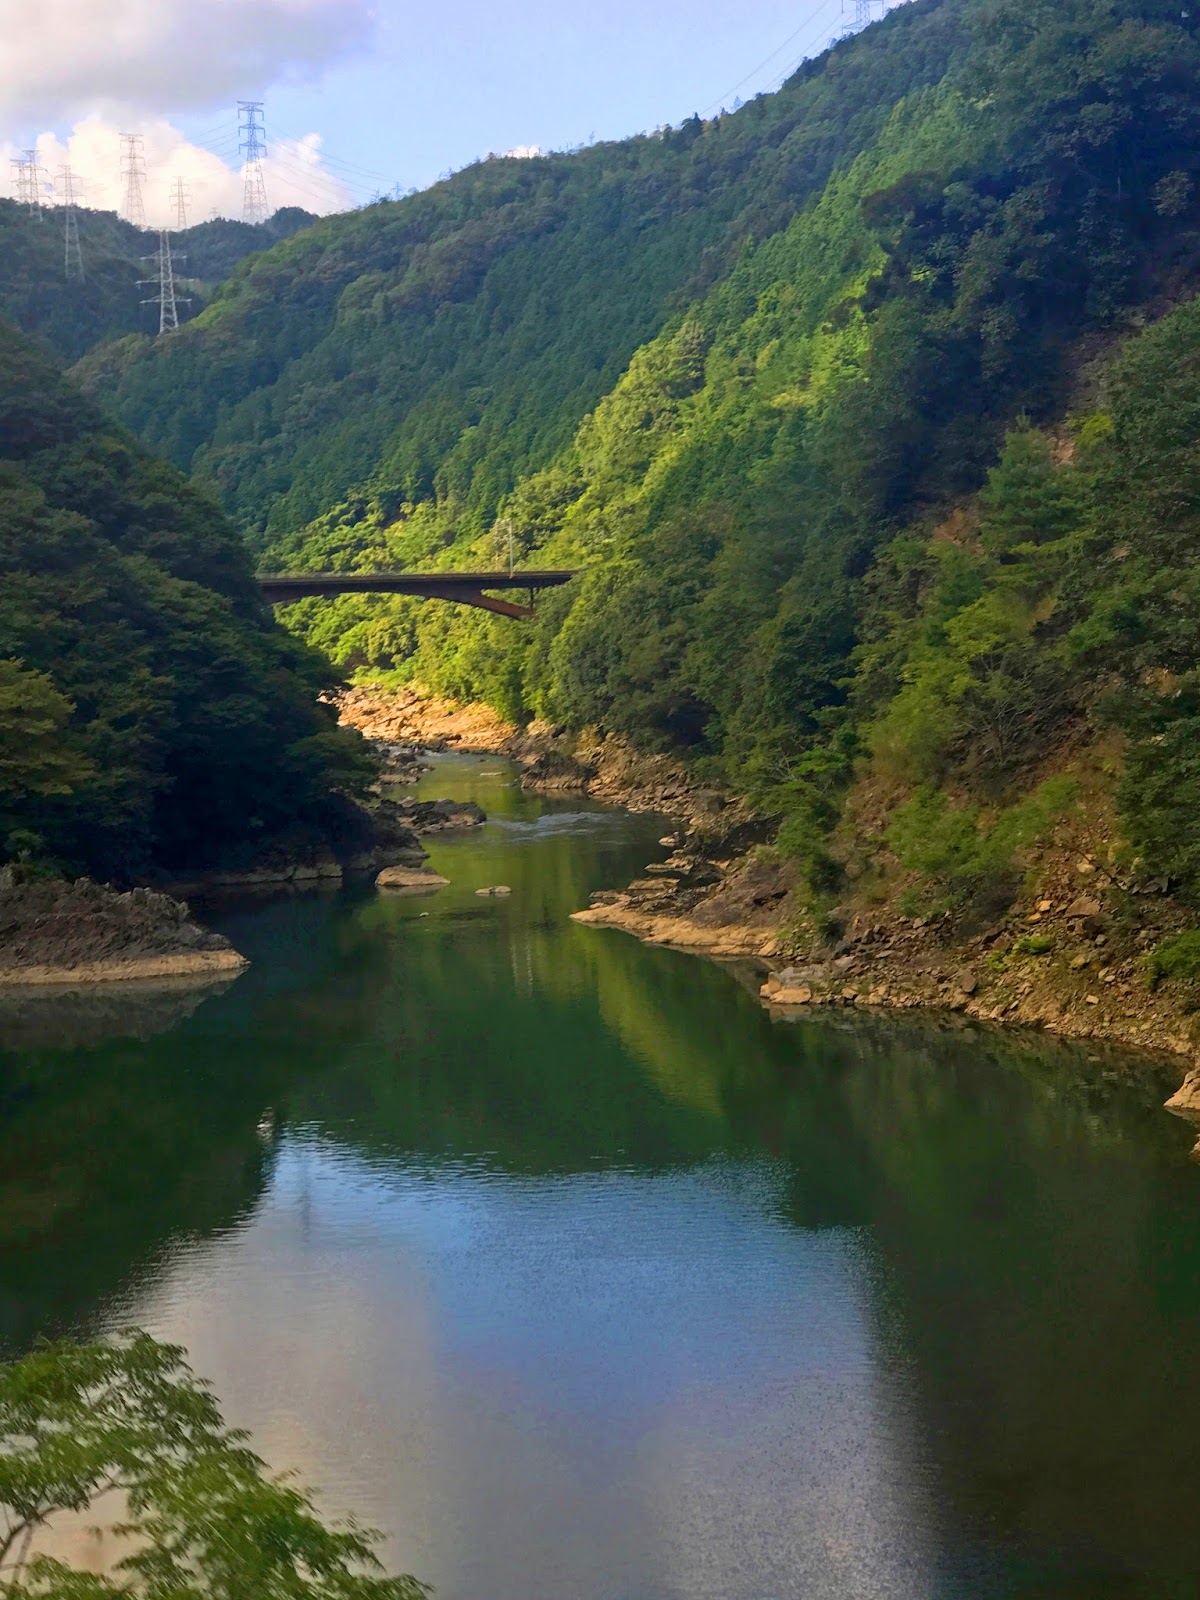 Touring around Arashiyama, Japan